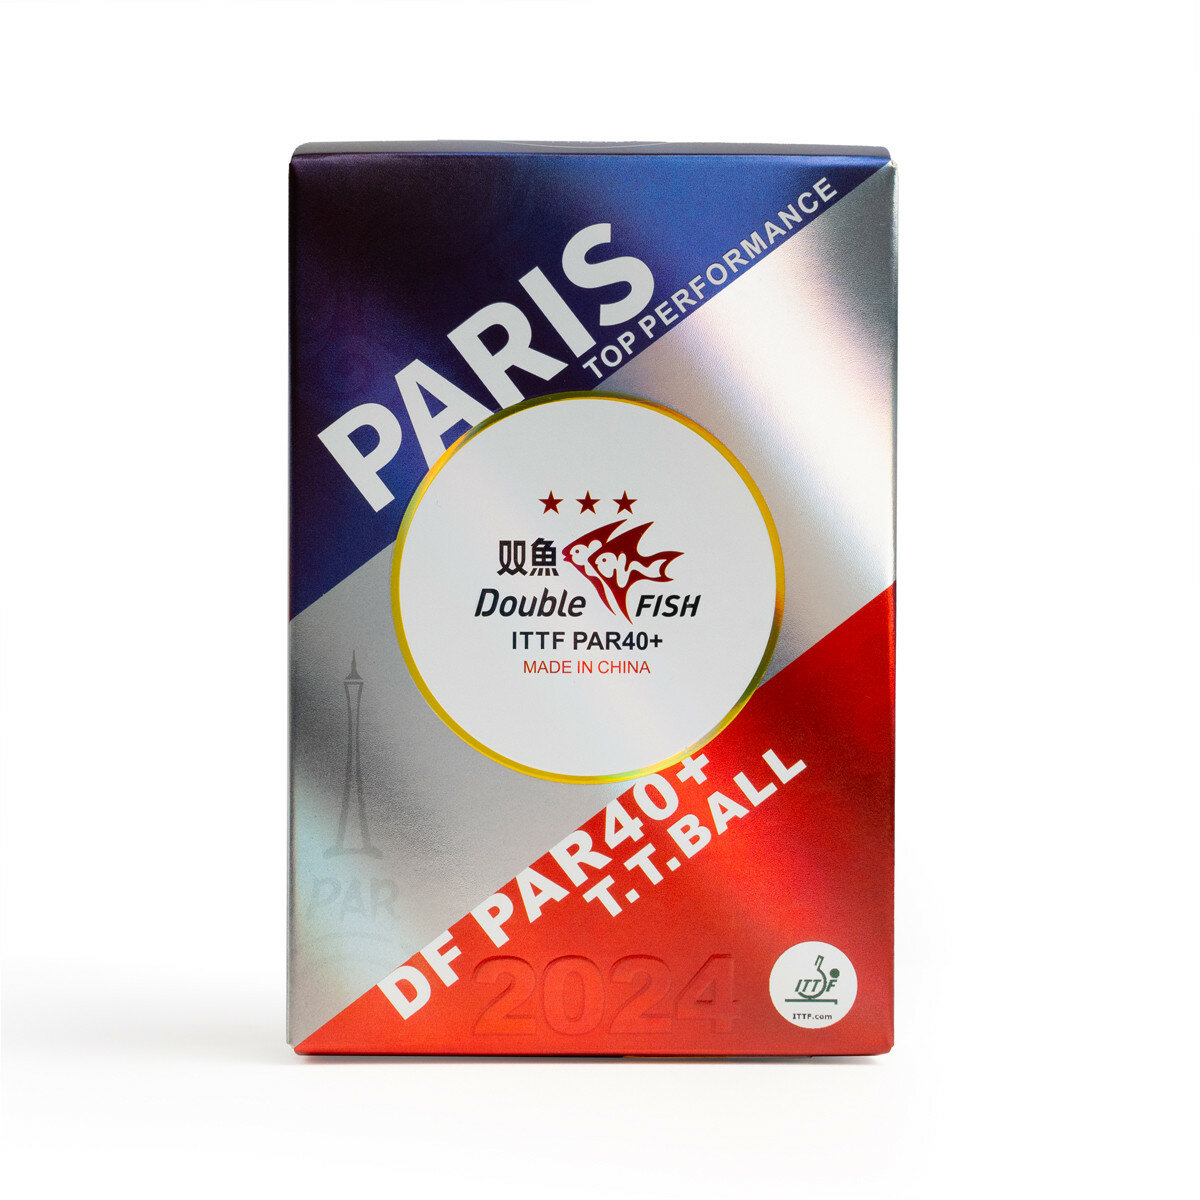 Мяч для настольного тенниса Double Fish Paris 2024 Olympic Games 3***, PAR40, 40+мм, ITTF Appr, уп.6 шт